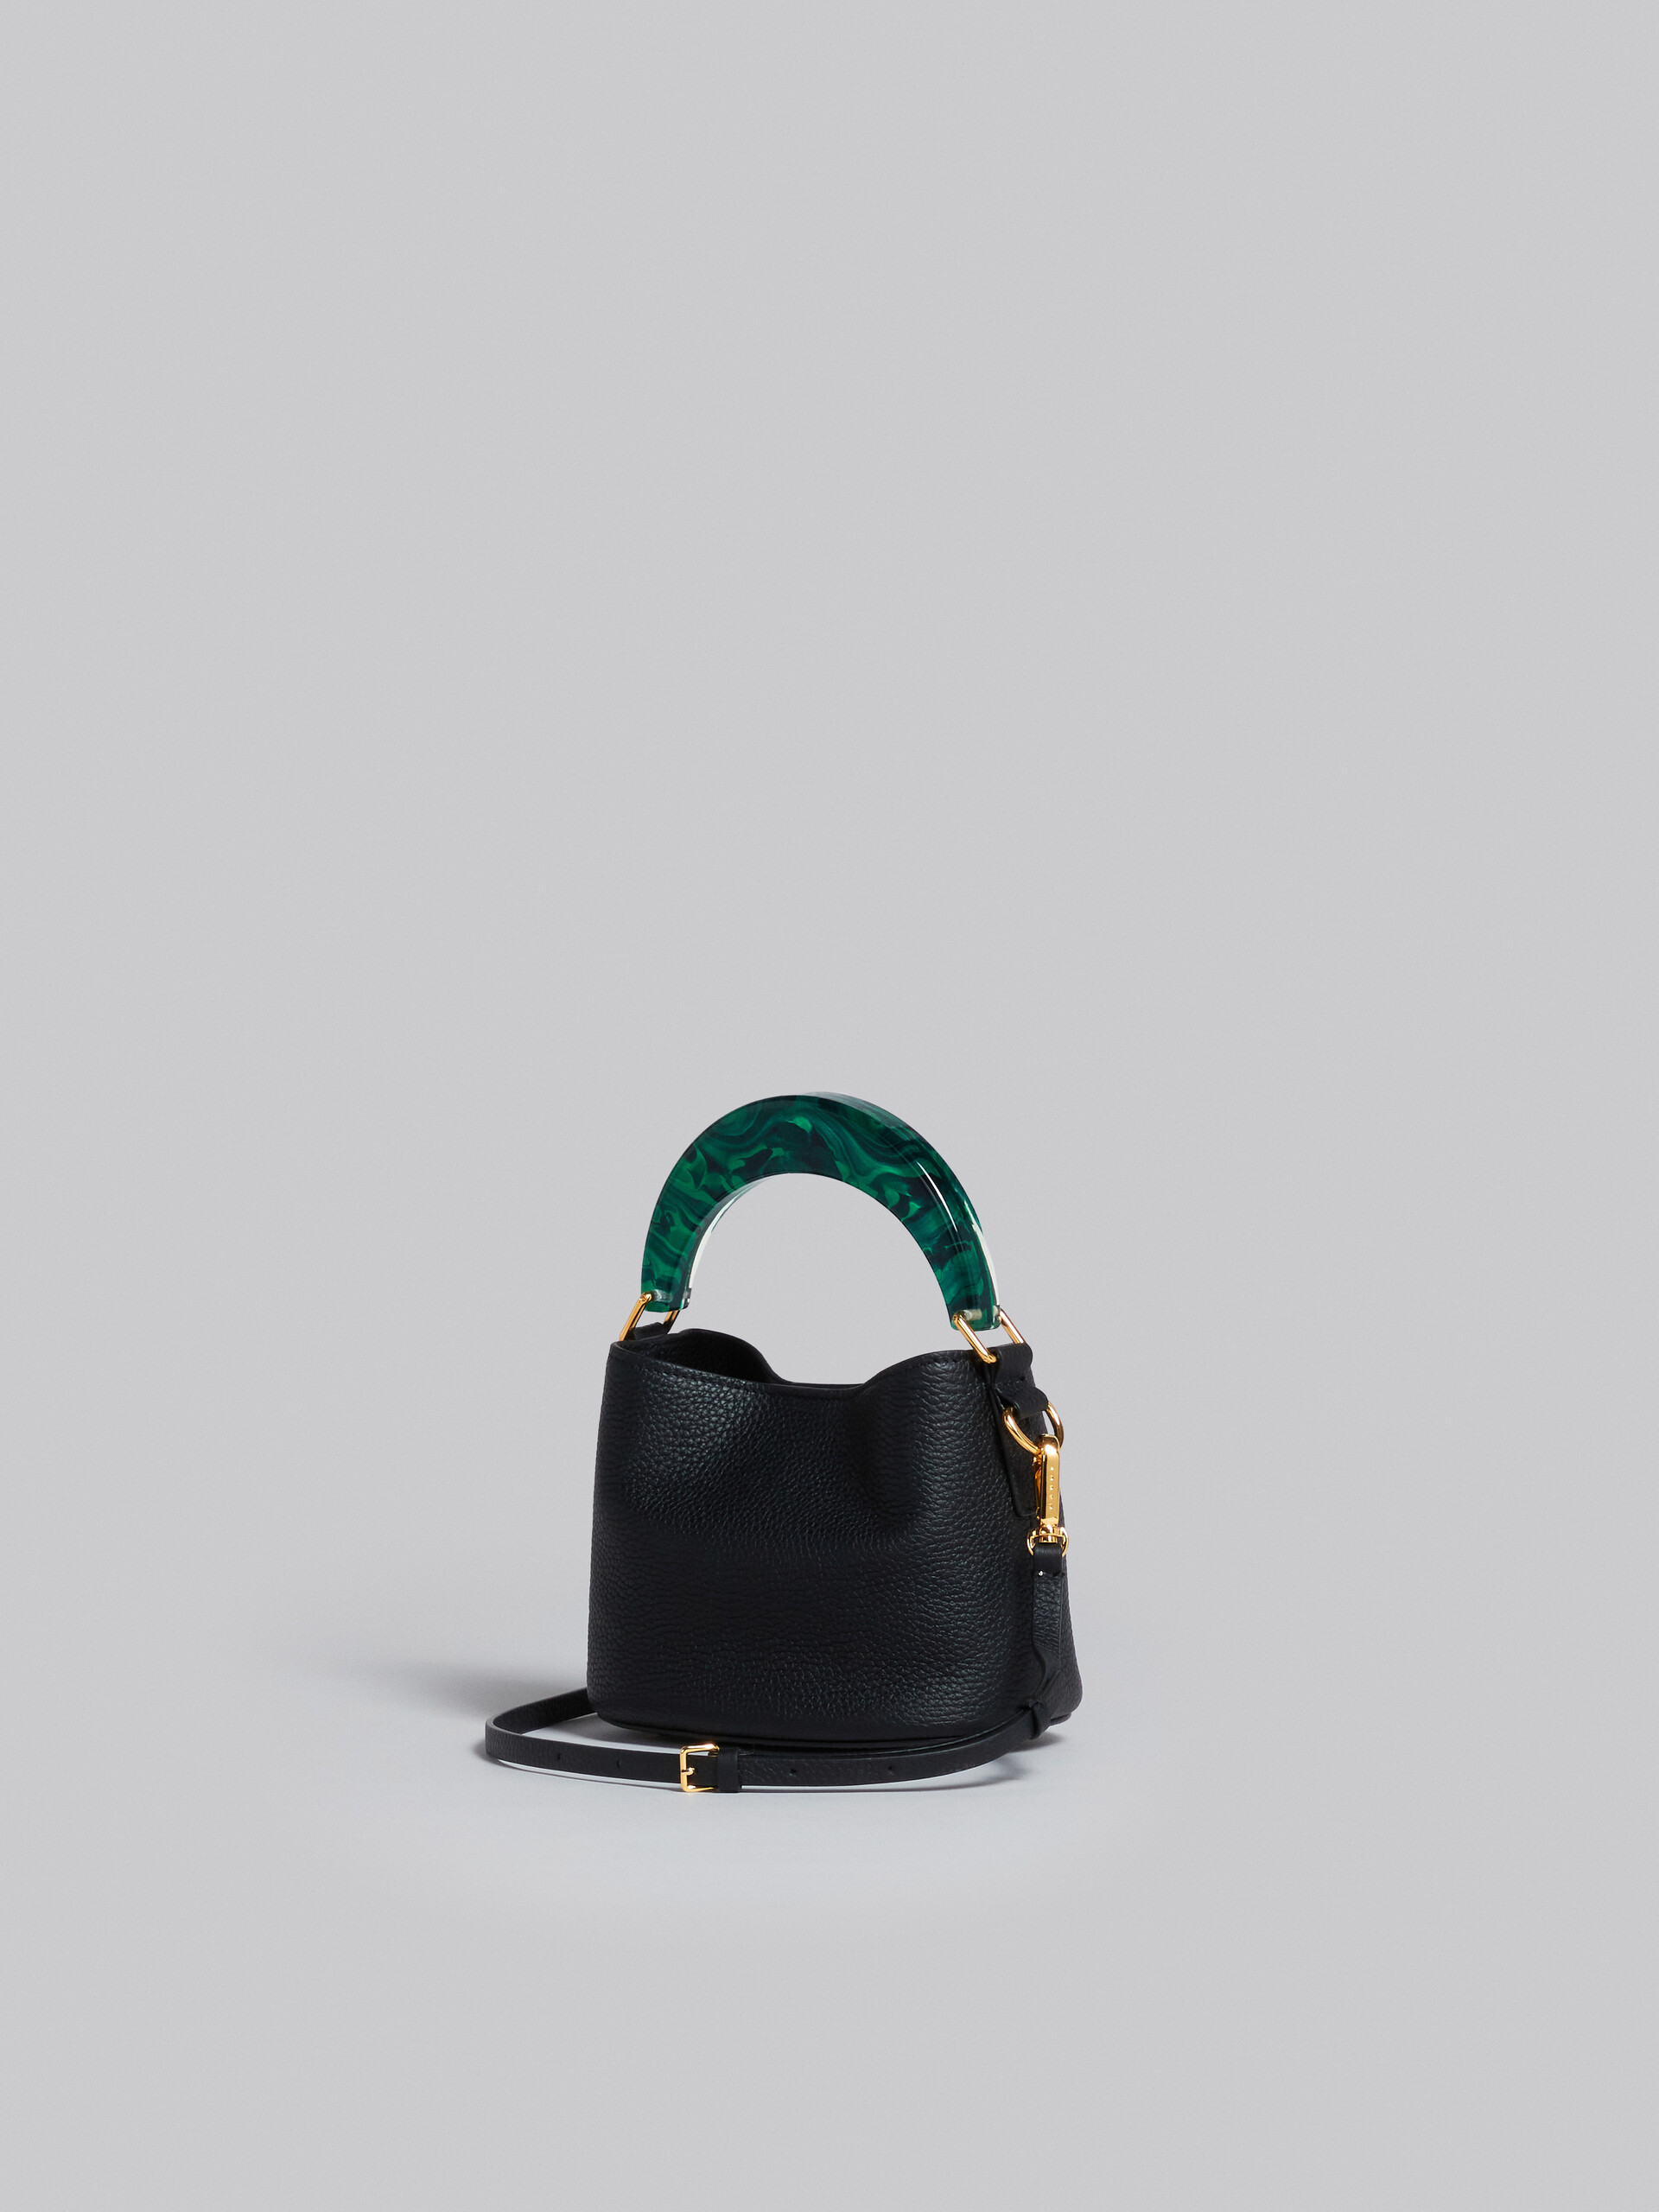 Venice Mini Bucket Bag in black leather - Shoulder Bag - Image 2